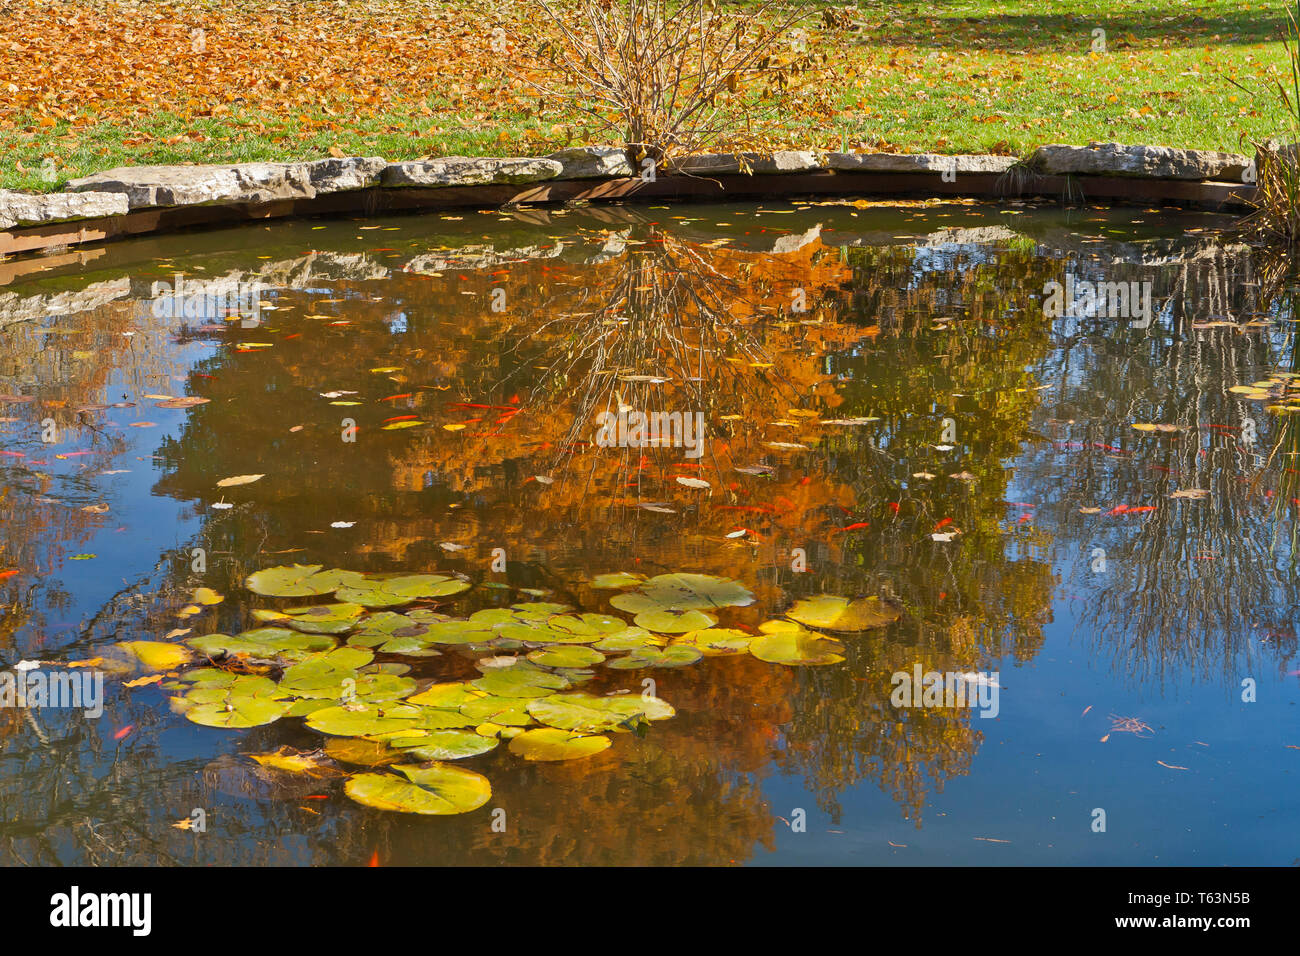 Poisson rouge rouge vif dans un petit étang au Missouri Botanical Garden avec de l'eau nénuphars et le brun-rougeâtre feuillage de l'automne d'un cyprès chauve refle Banque D'Images